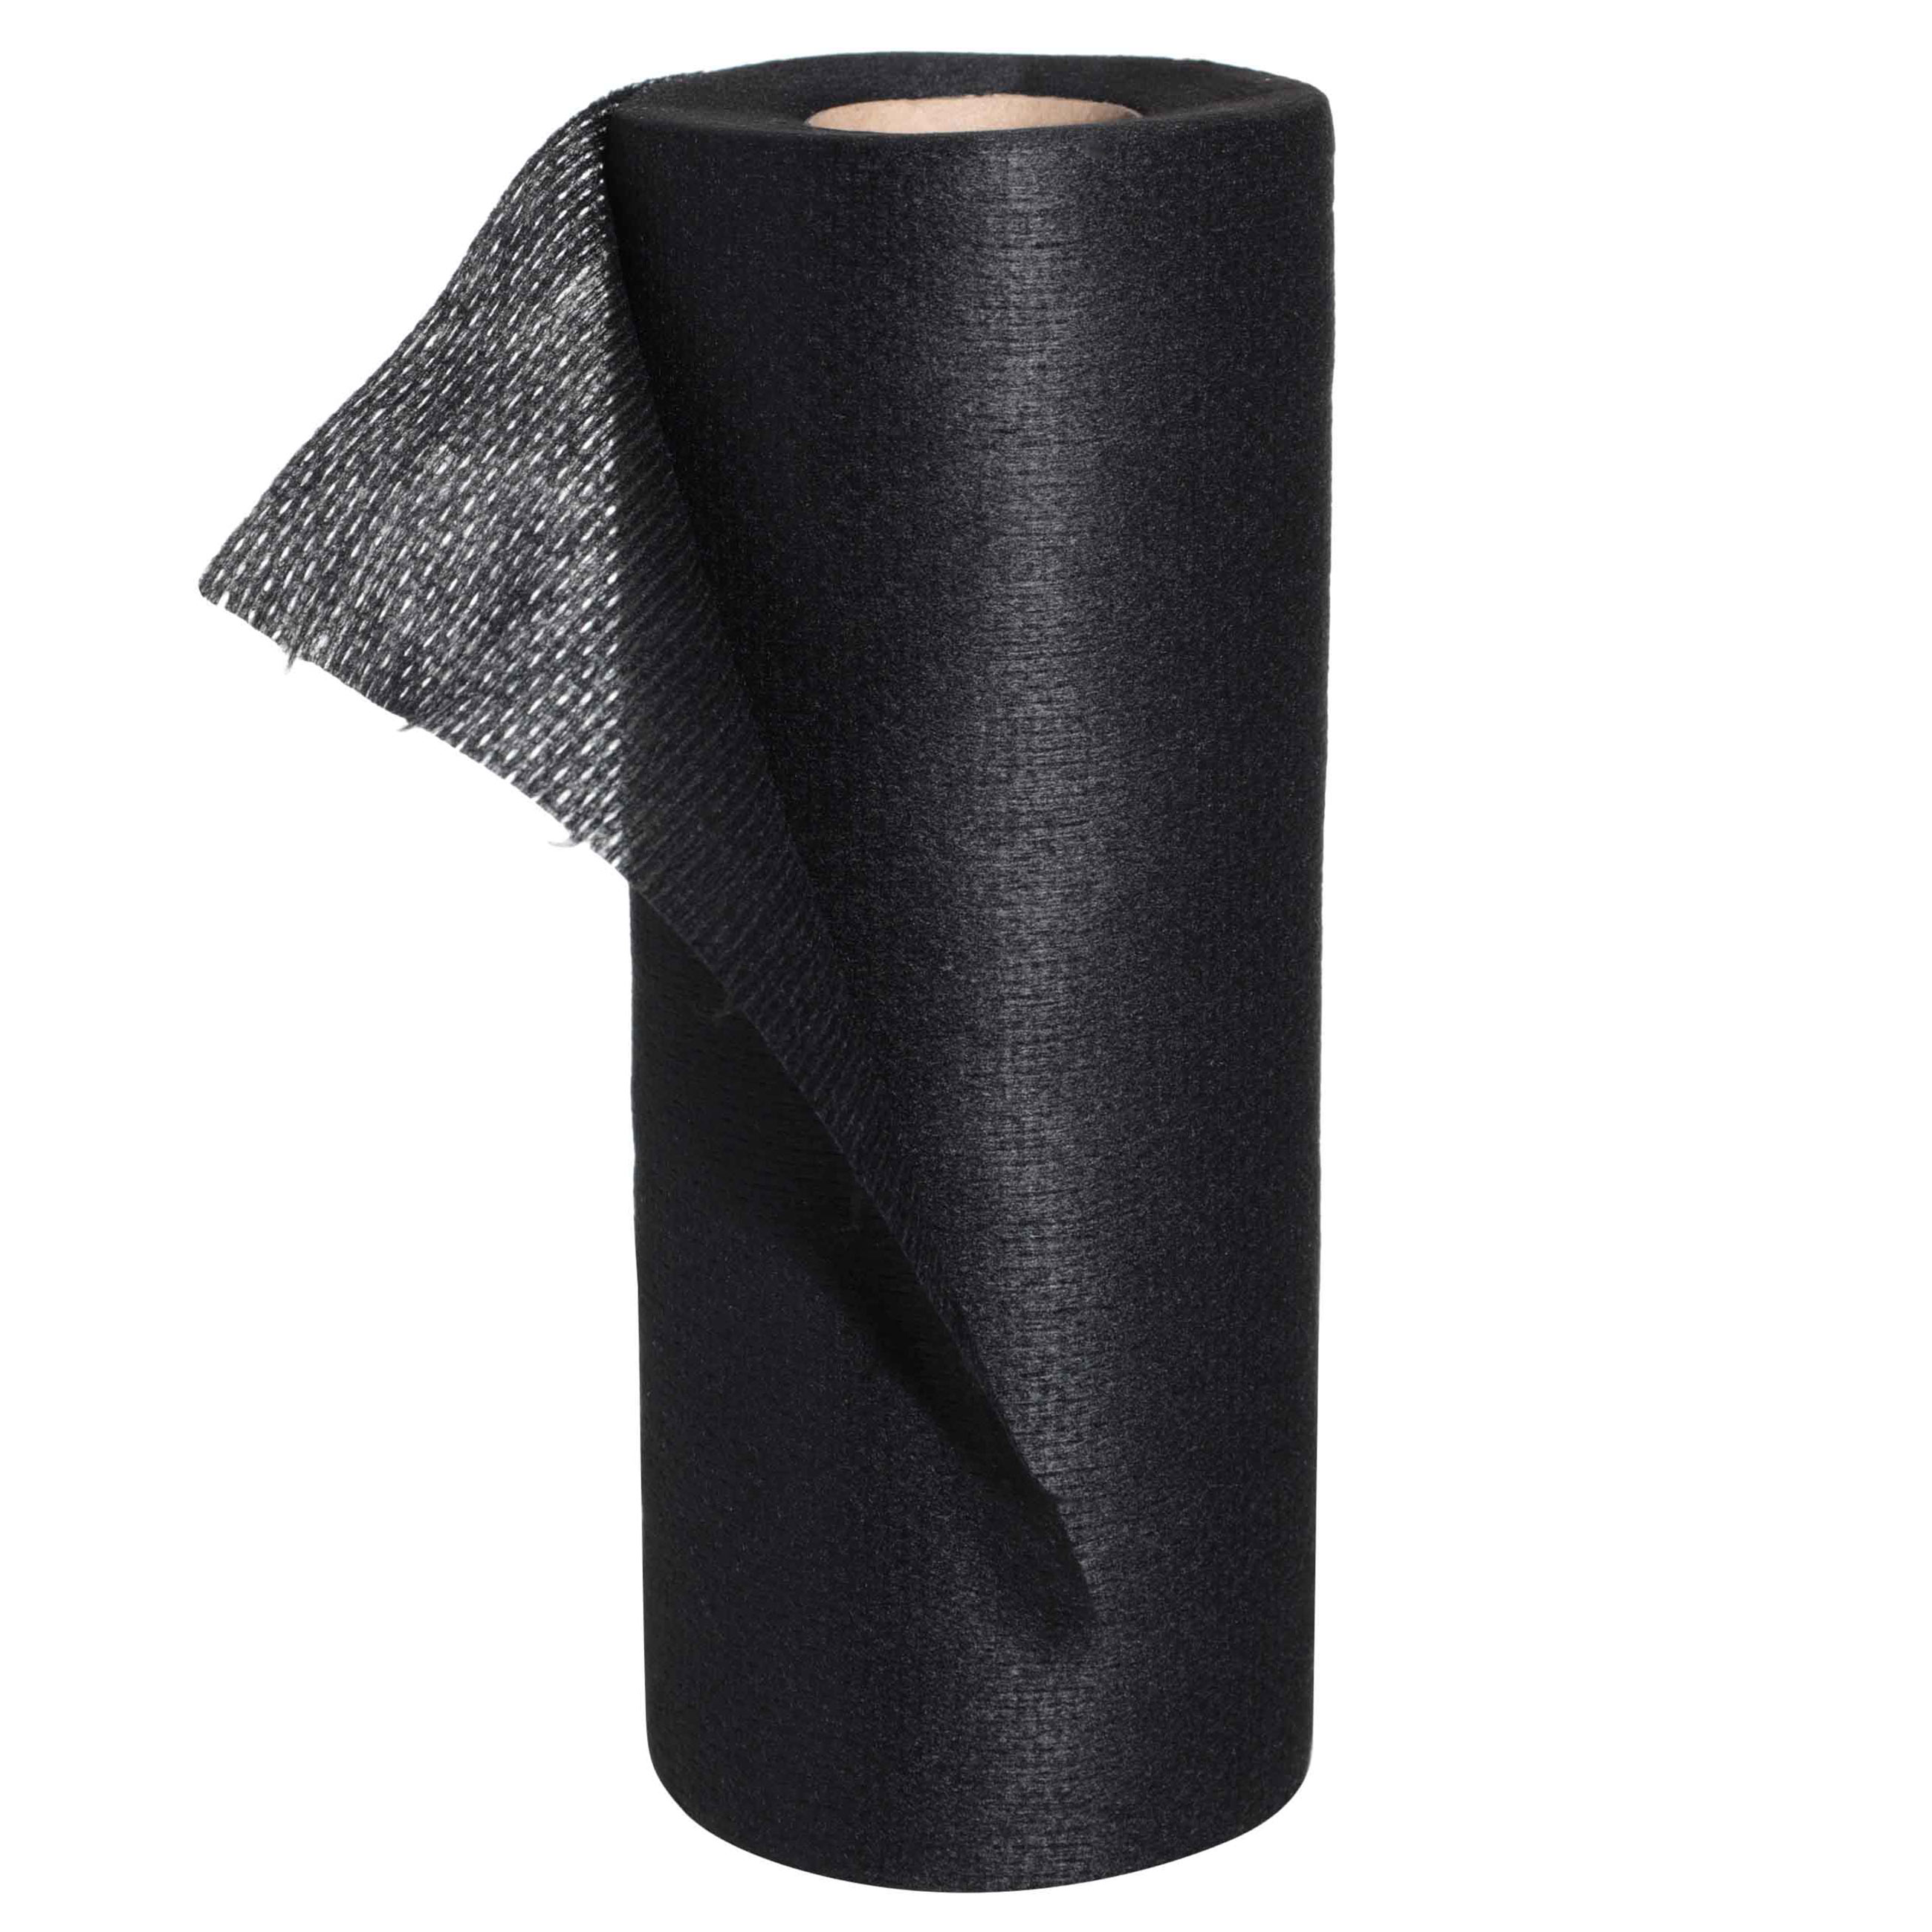 Полотенца рулонные, 25х40 см, 52 шт, черные, Black clean изображение № 2